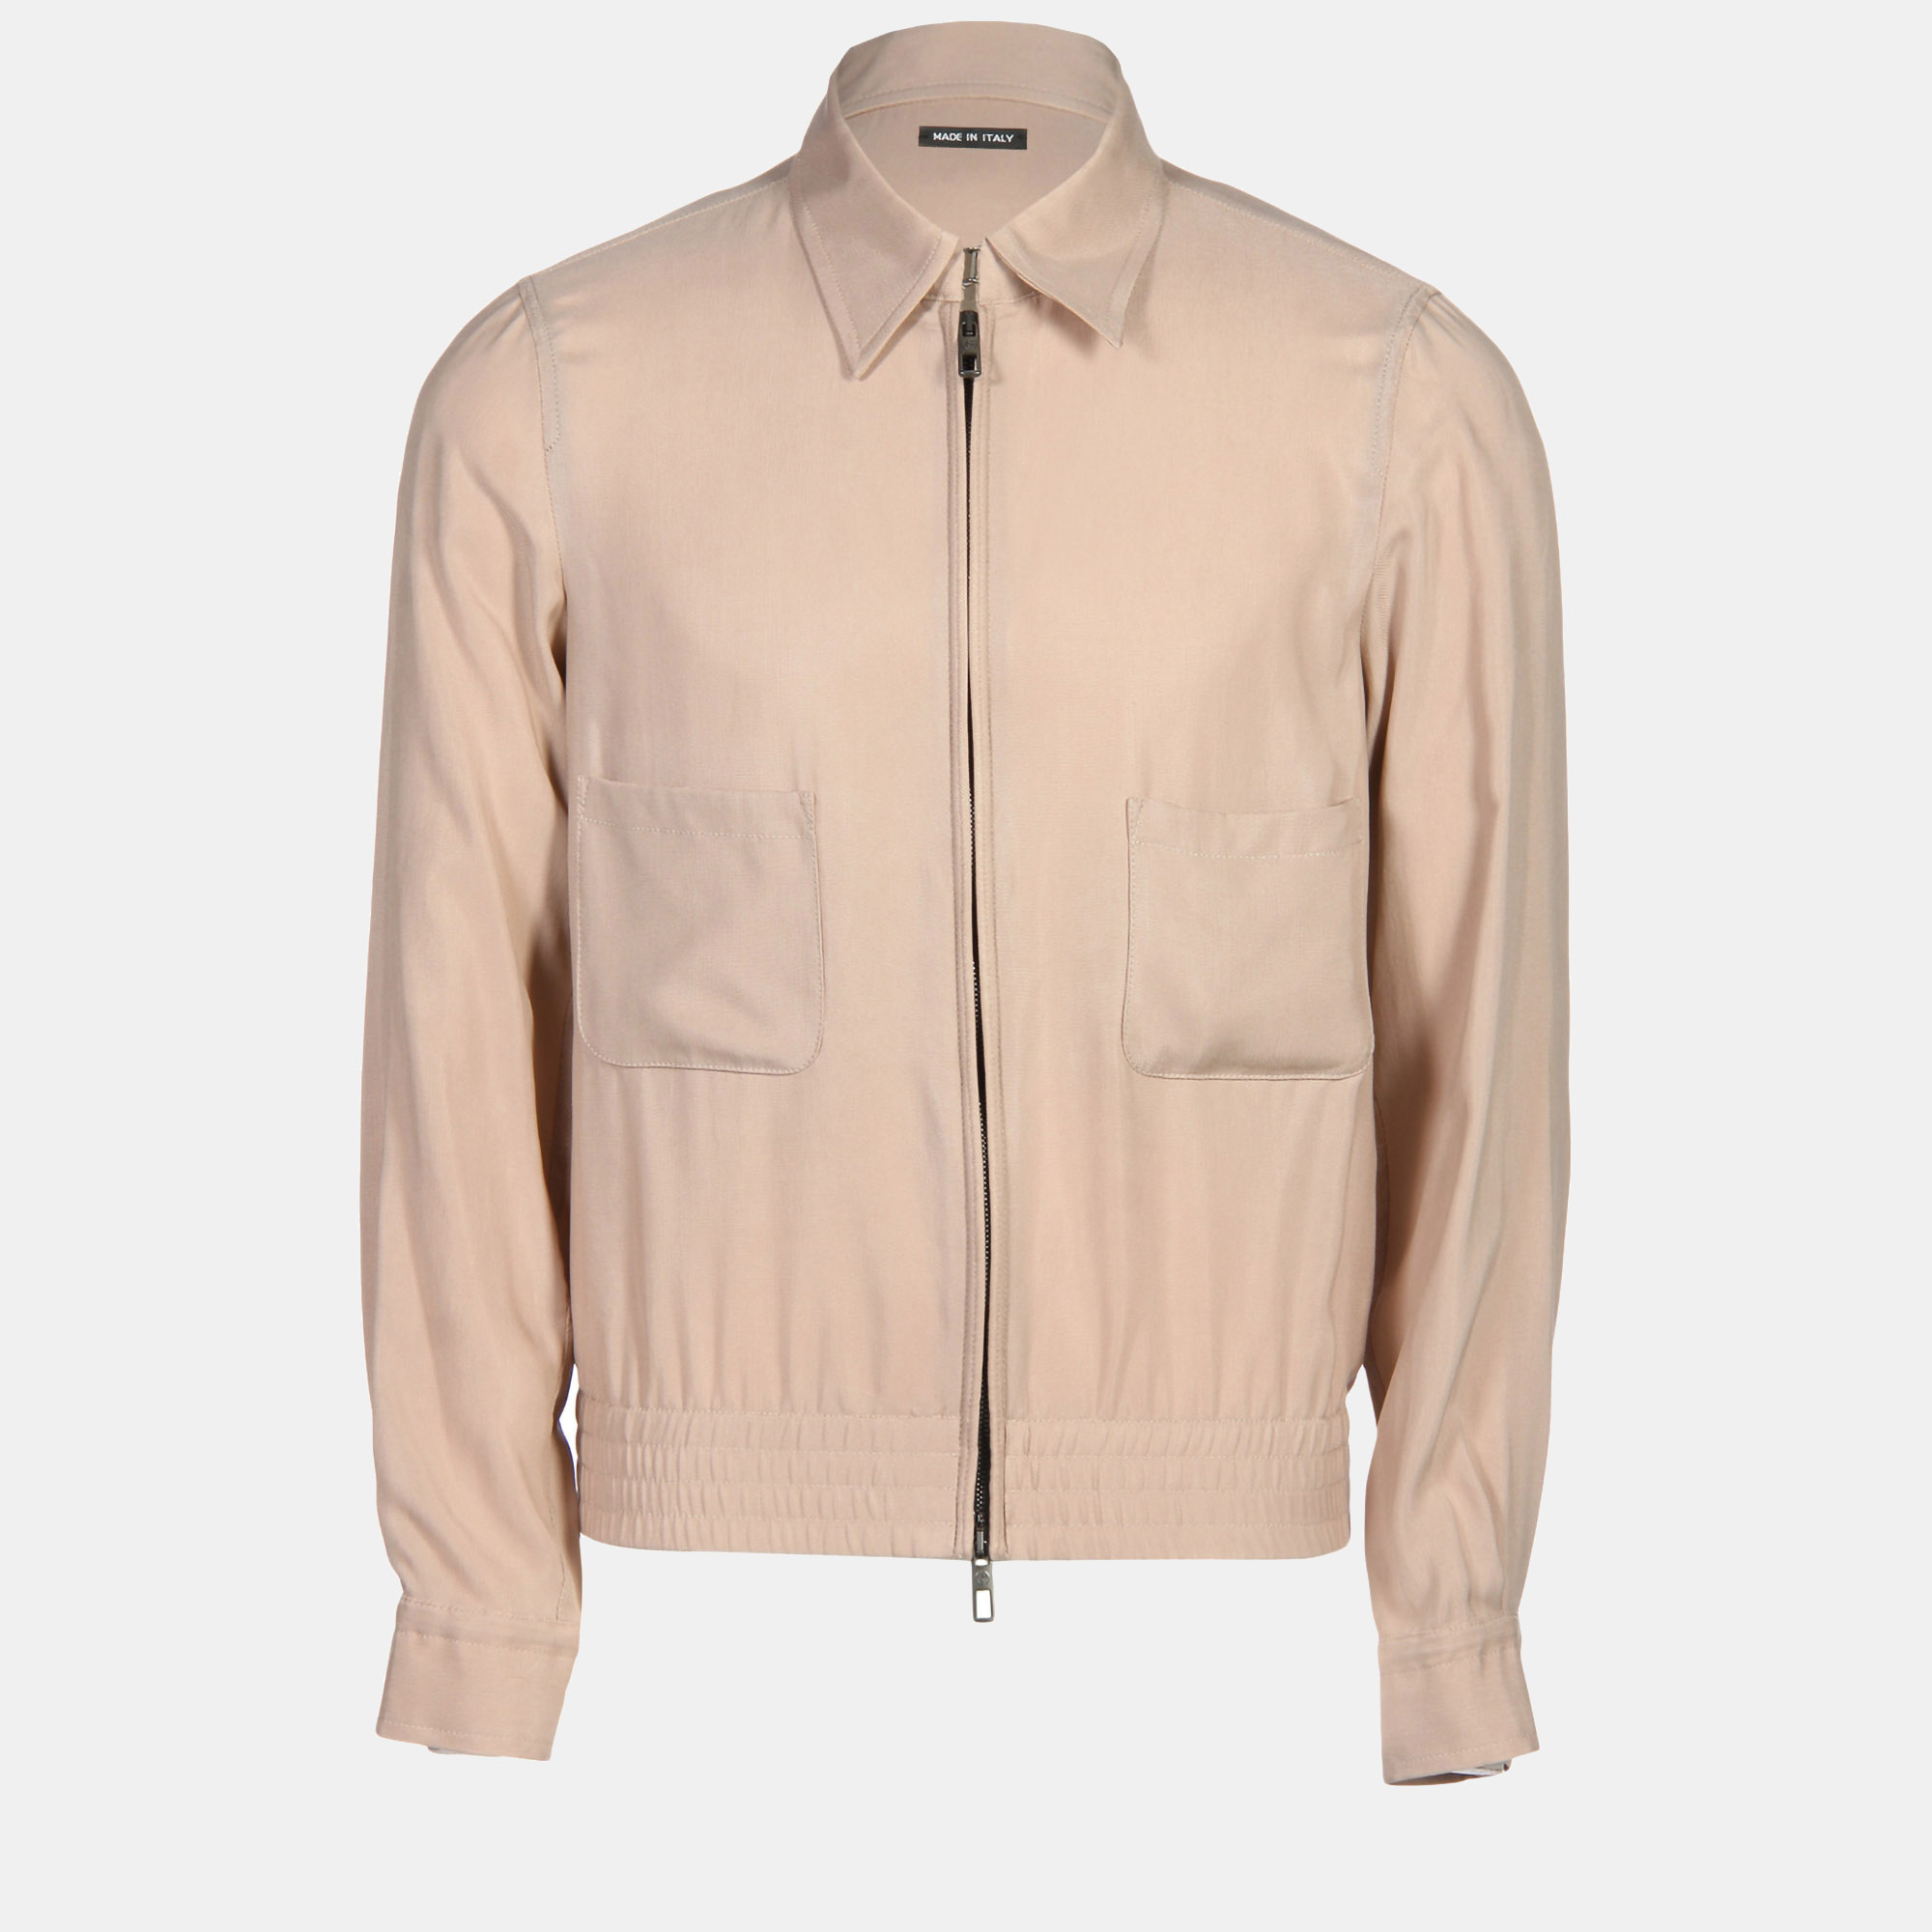 Giorgio armani beige cupro zipped jacket xl (it 52)